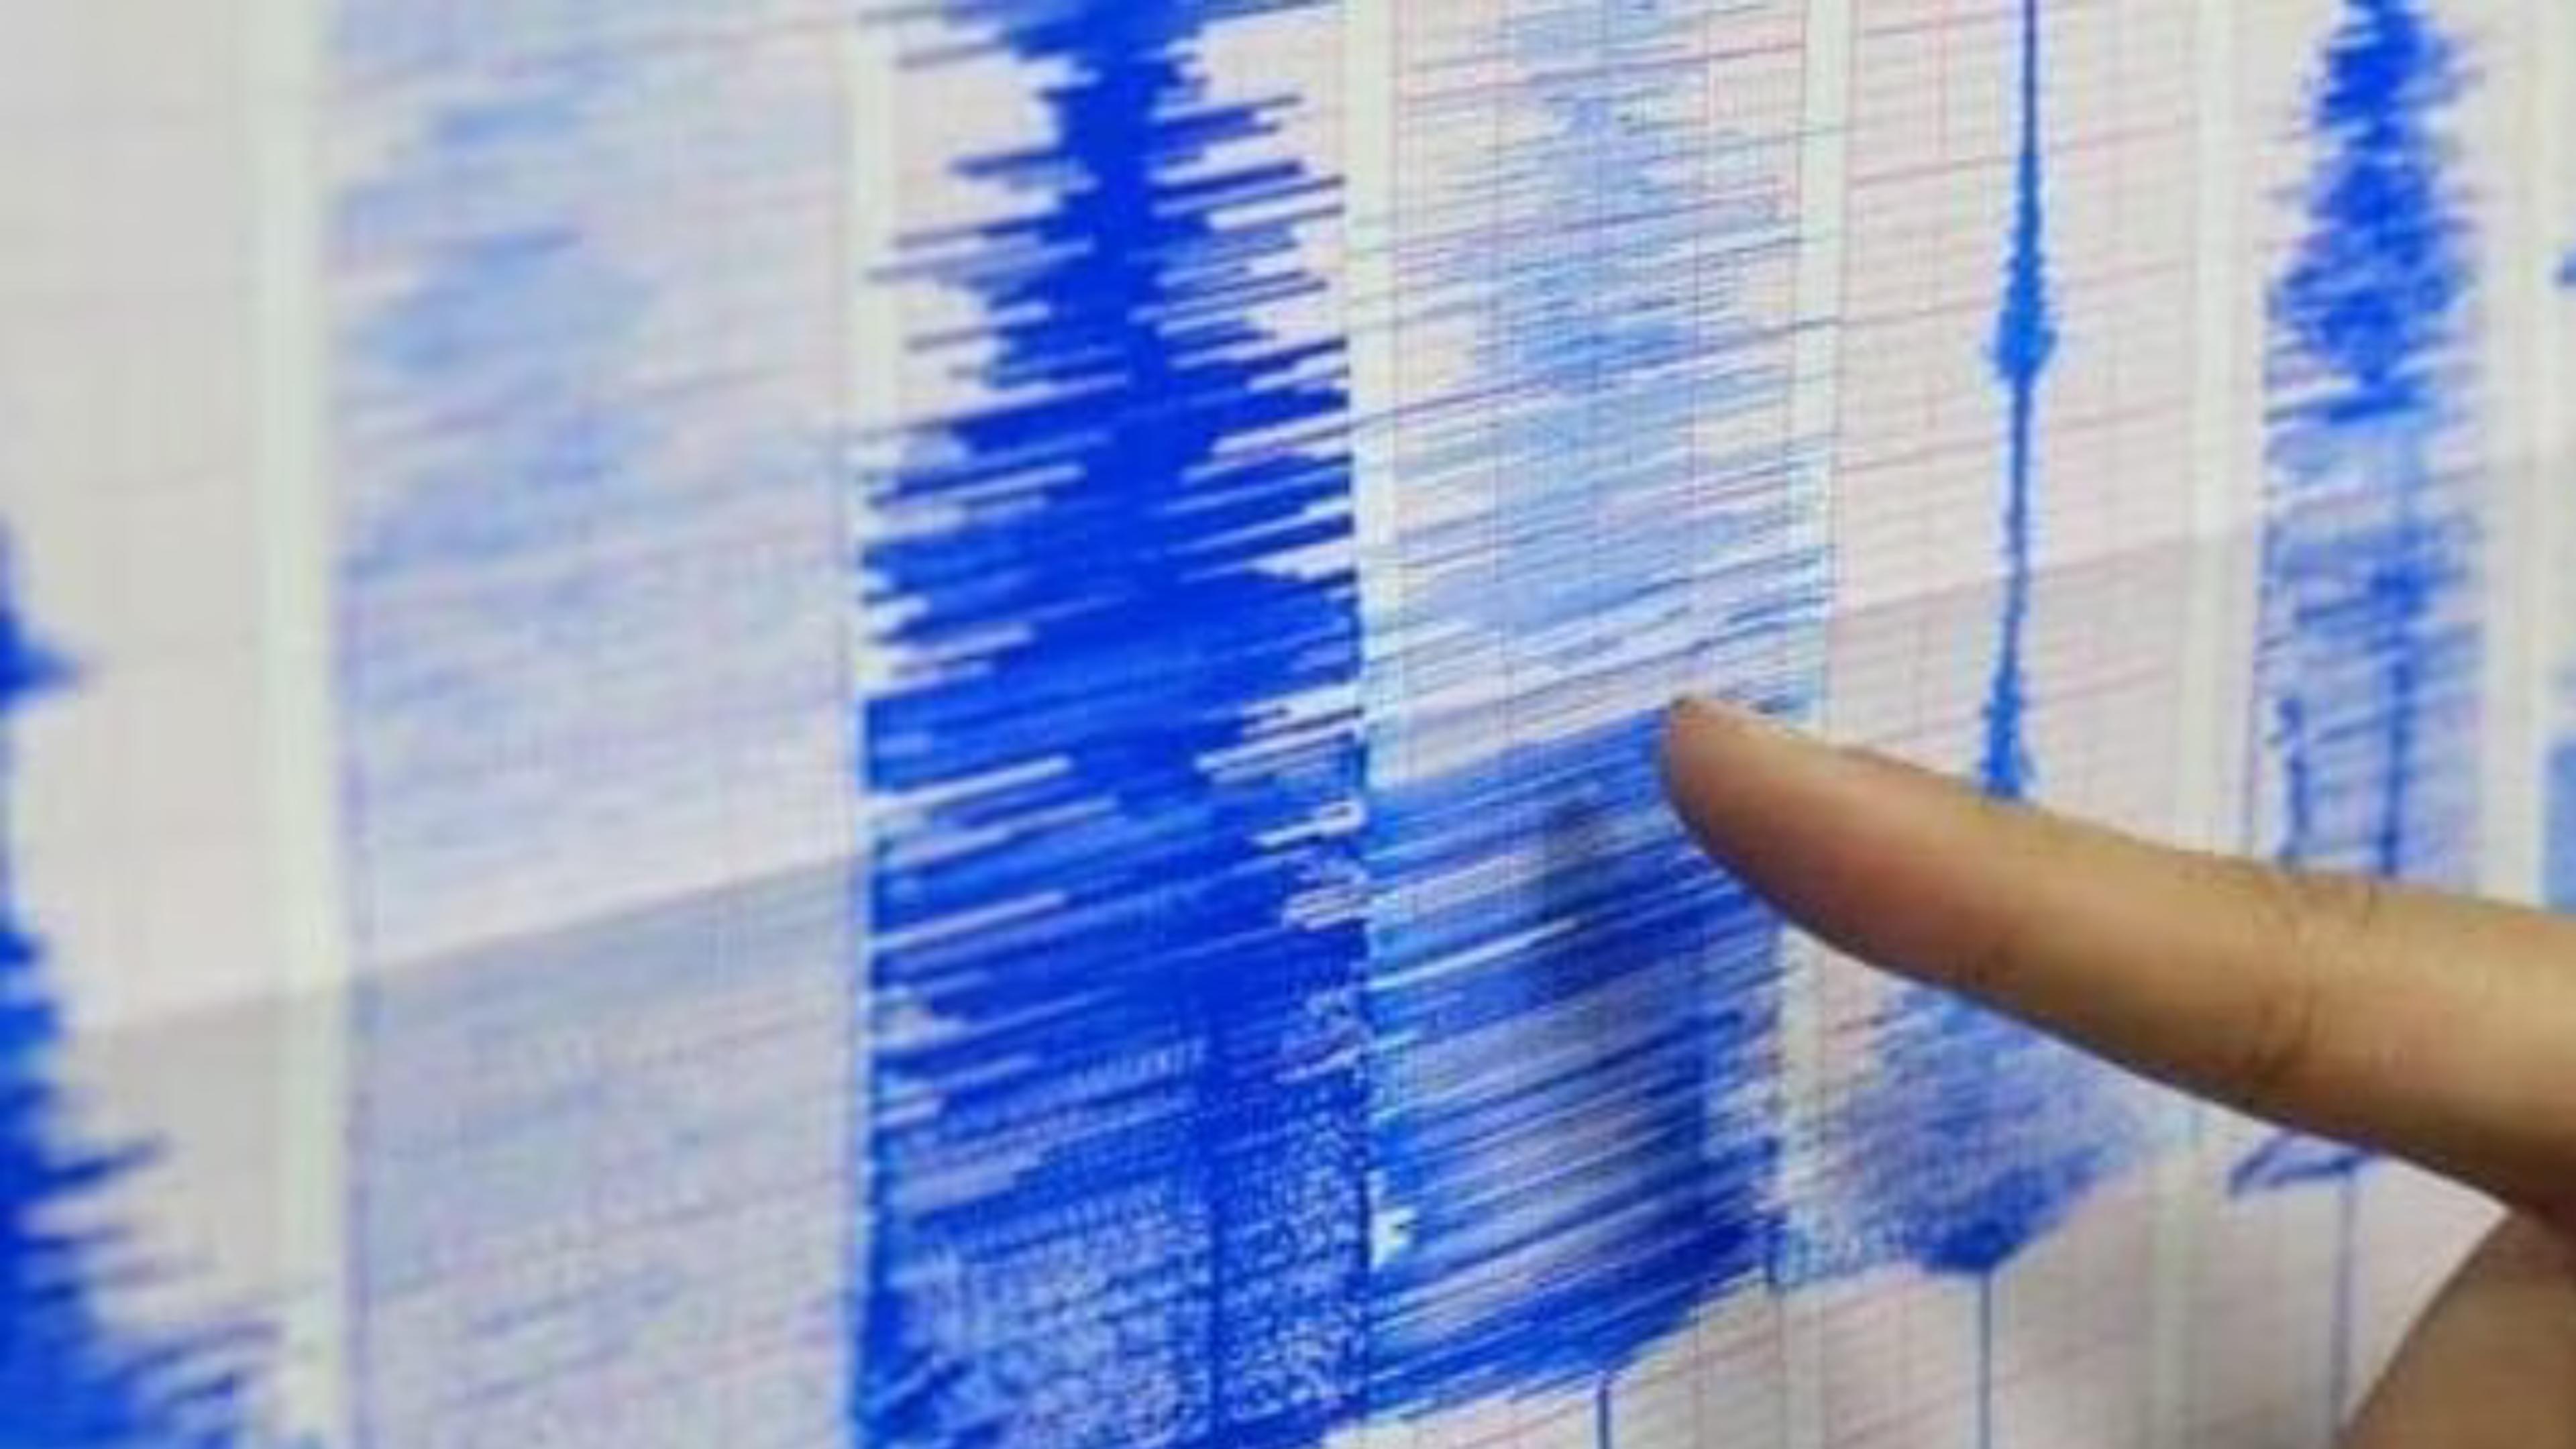 Earthquake in Kargil: लद्दाख में 5.2 तीव्रता का भूकंप, कांप गया करगिल से कश्मीर